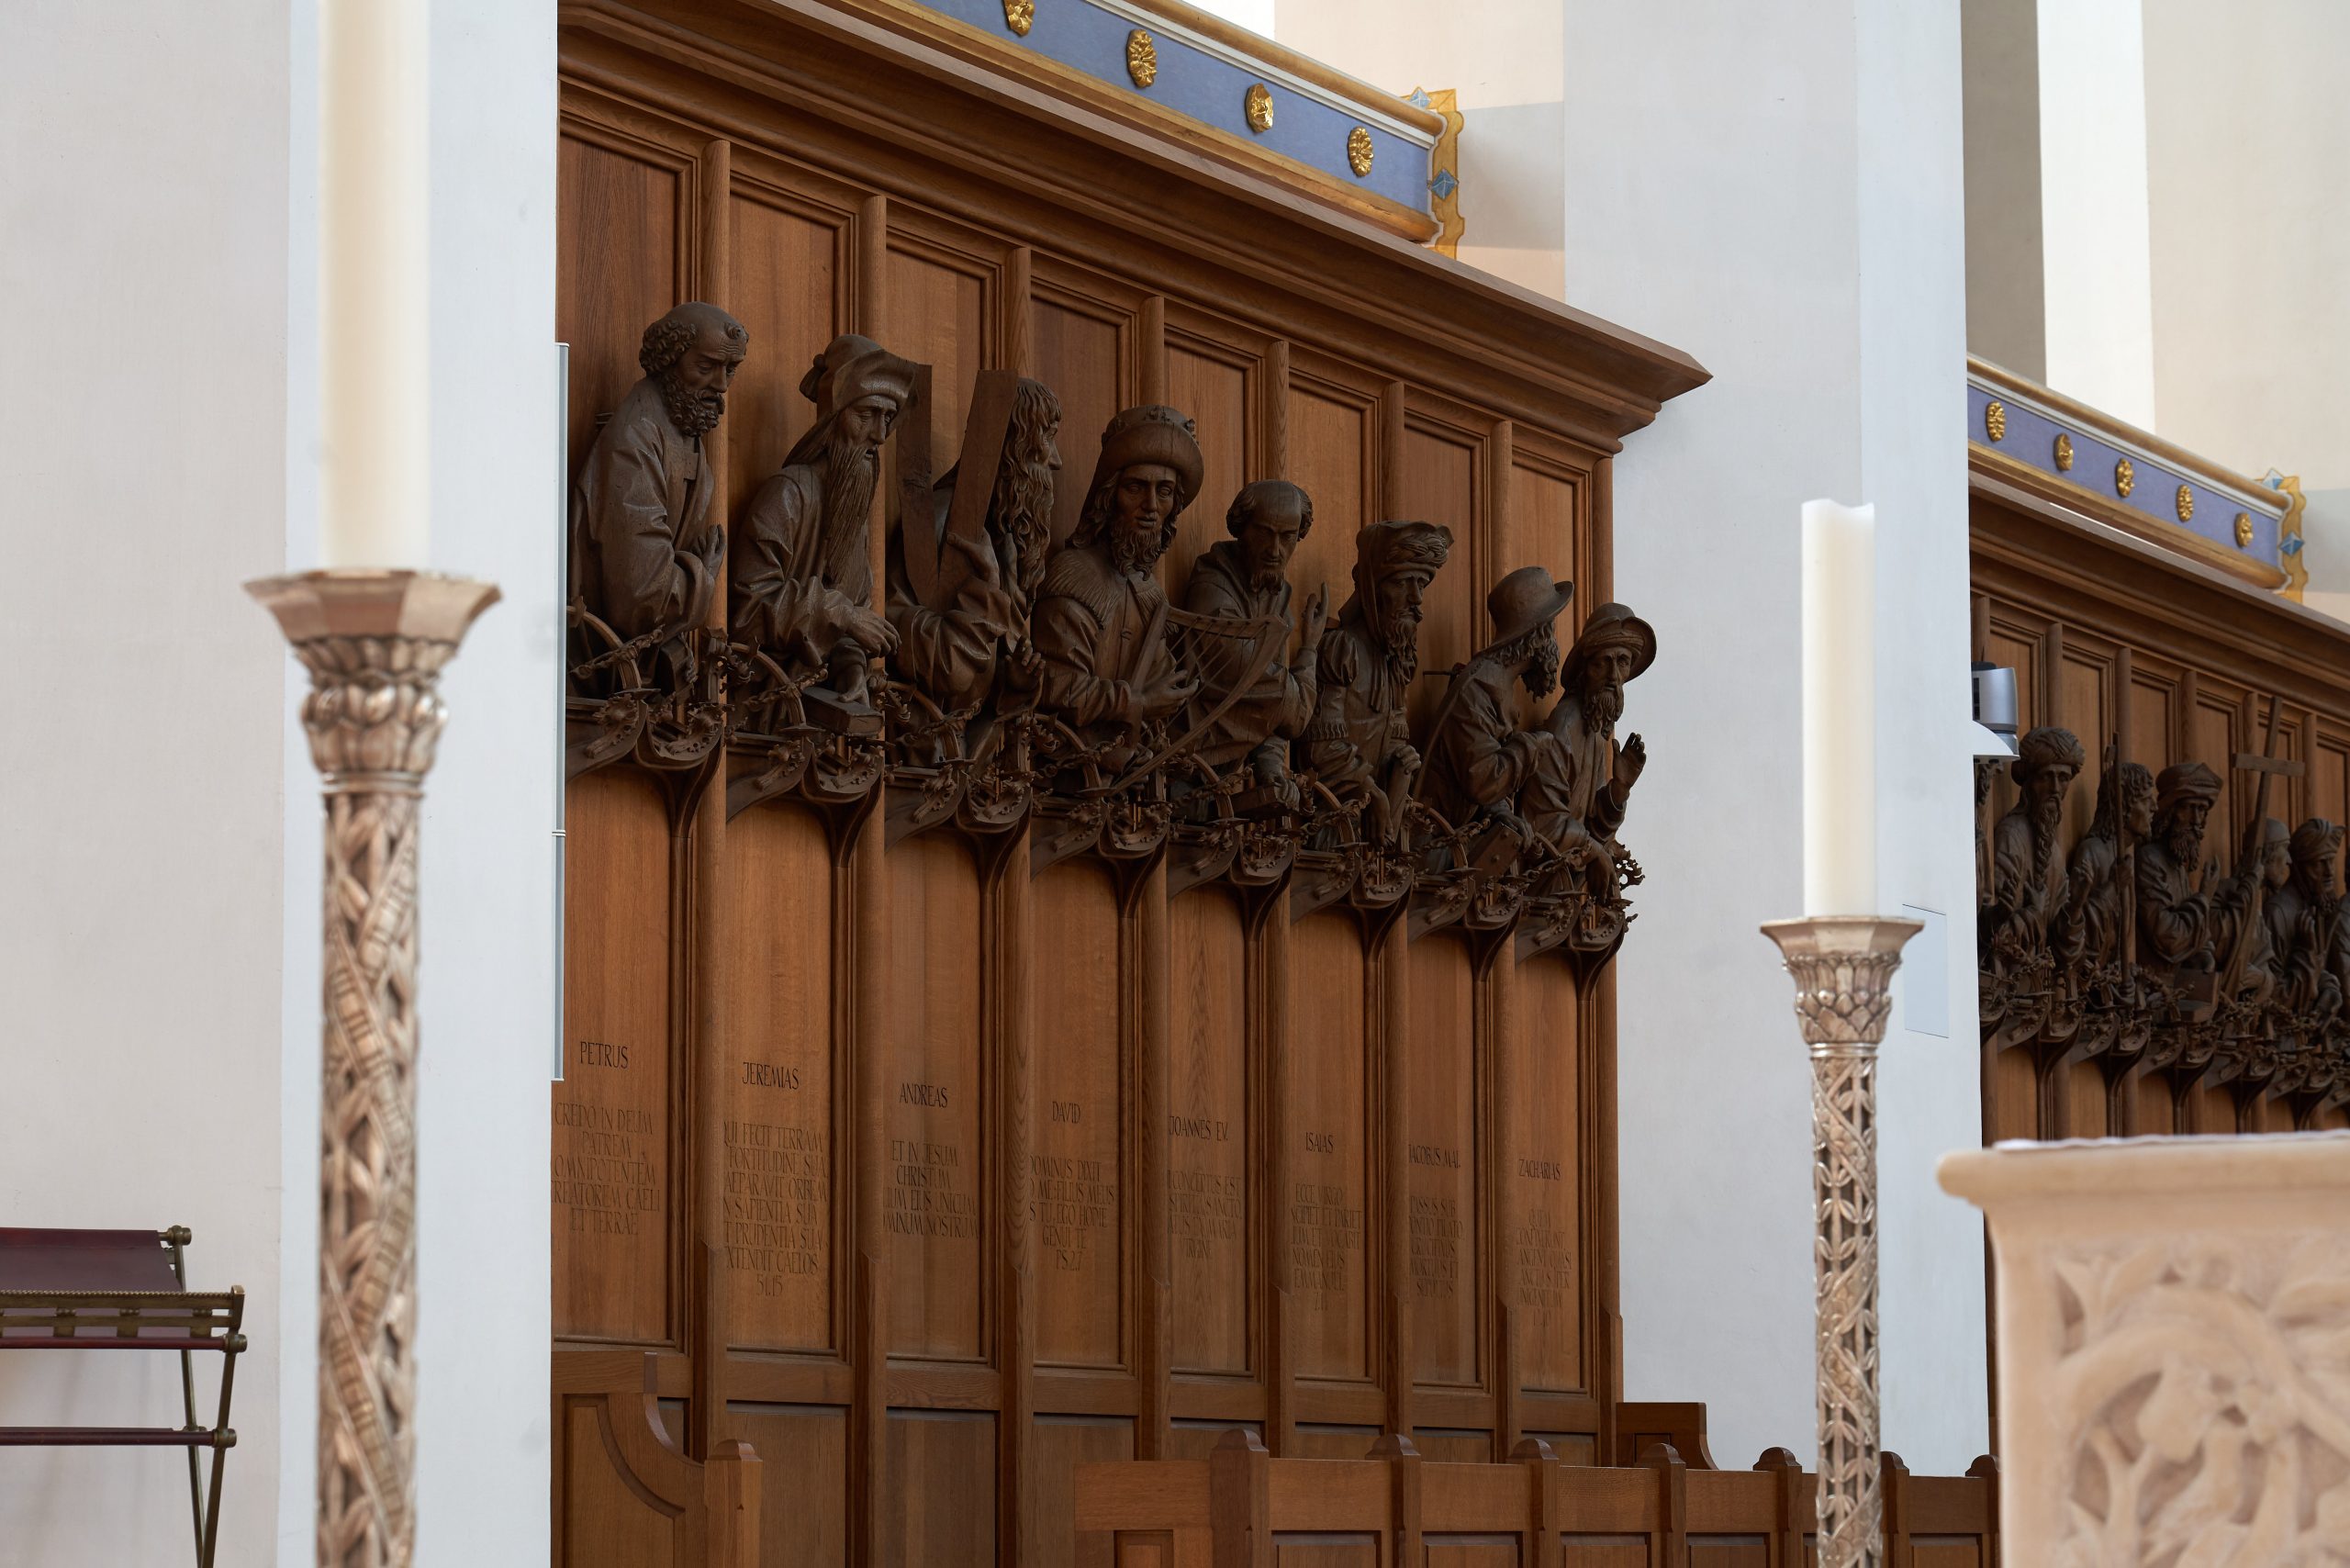 Das kaiserliche Grab: Die Münchner Frauenkirche